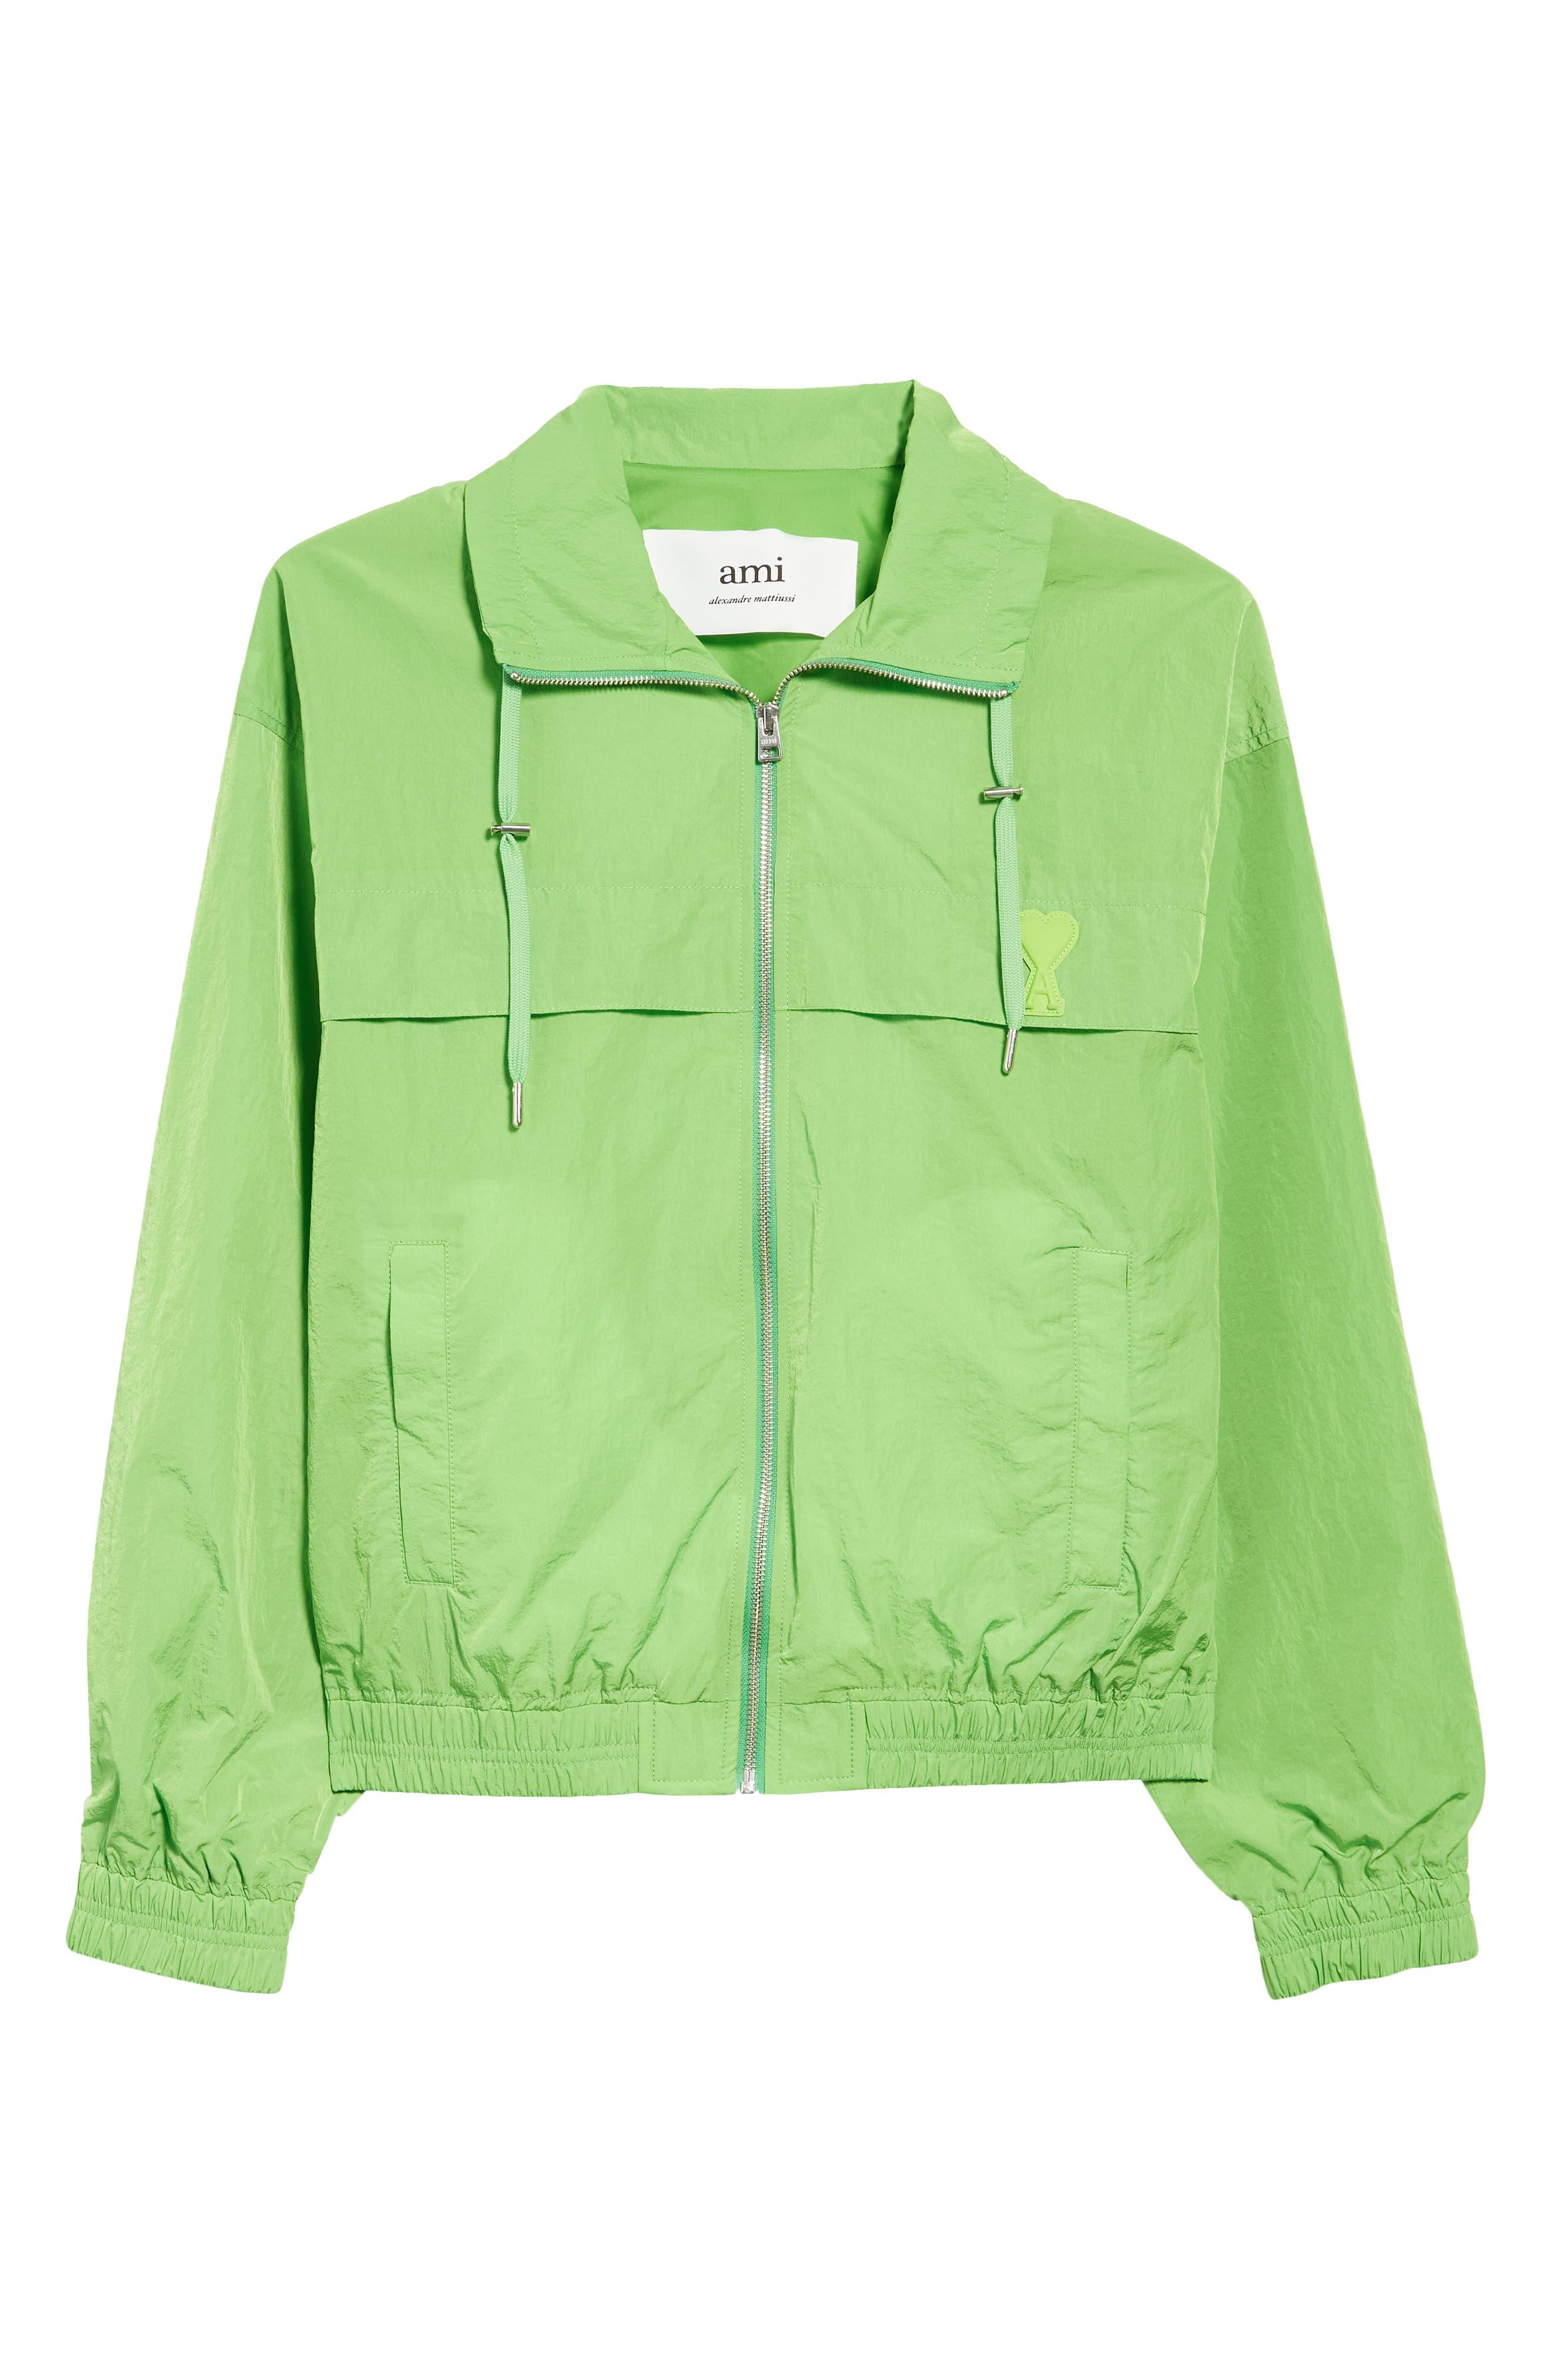 Ami Paris Ami De Coeur Logo Patch Zip Jacket in Green for Men | Lyst